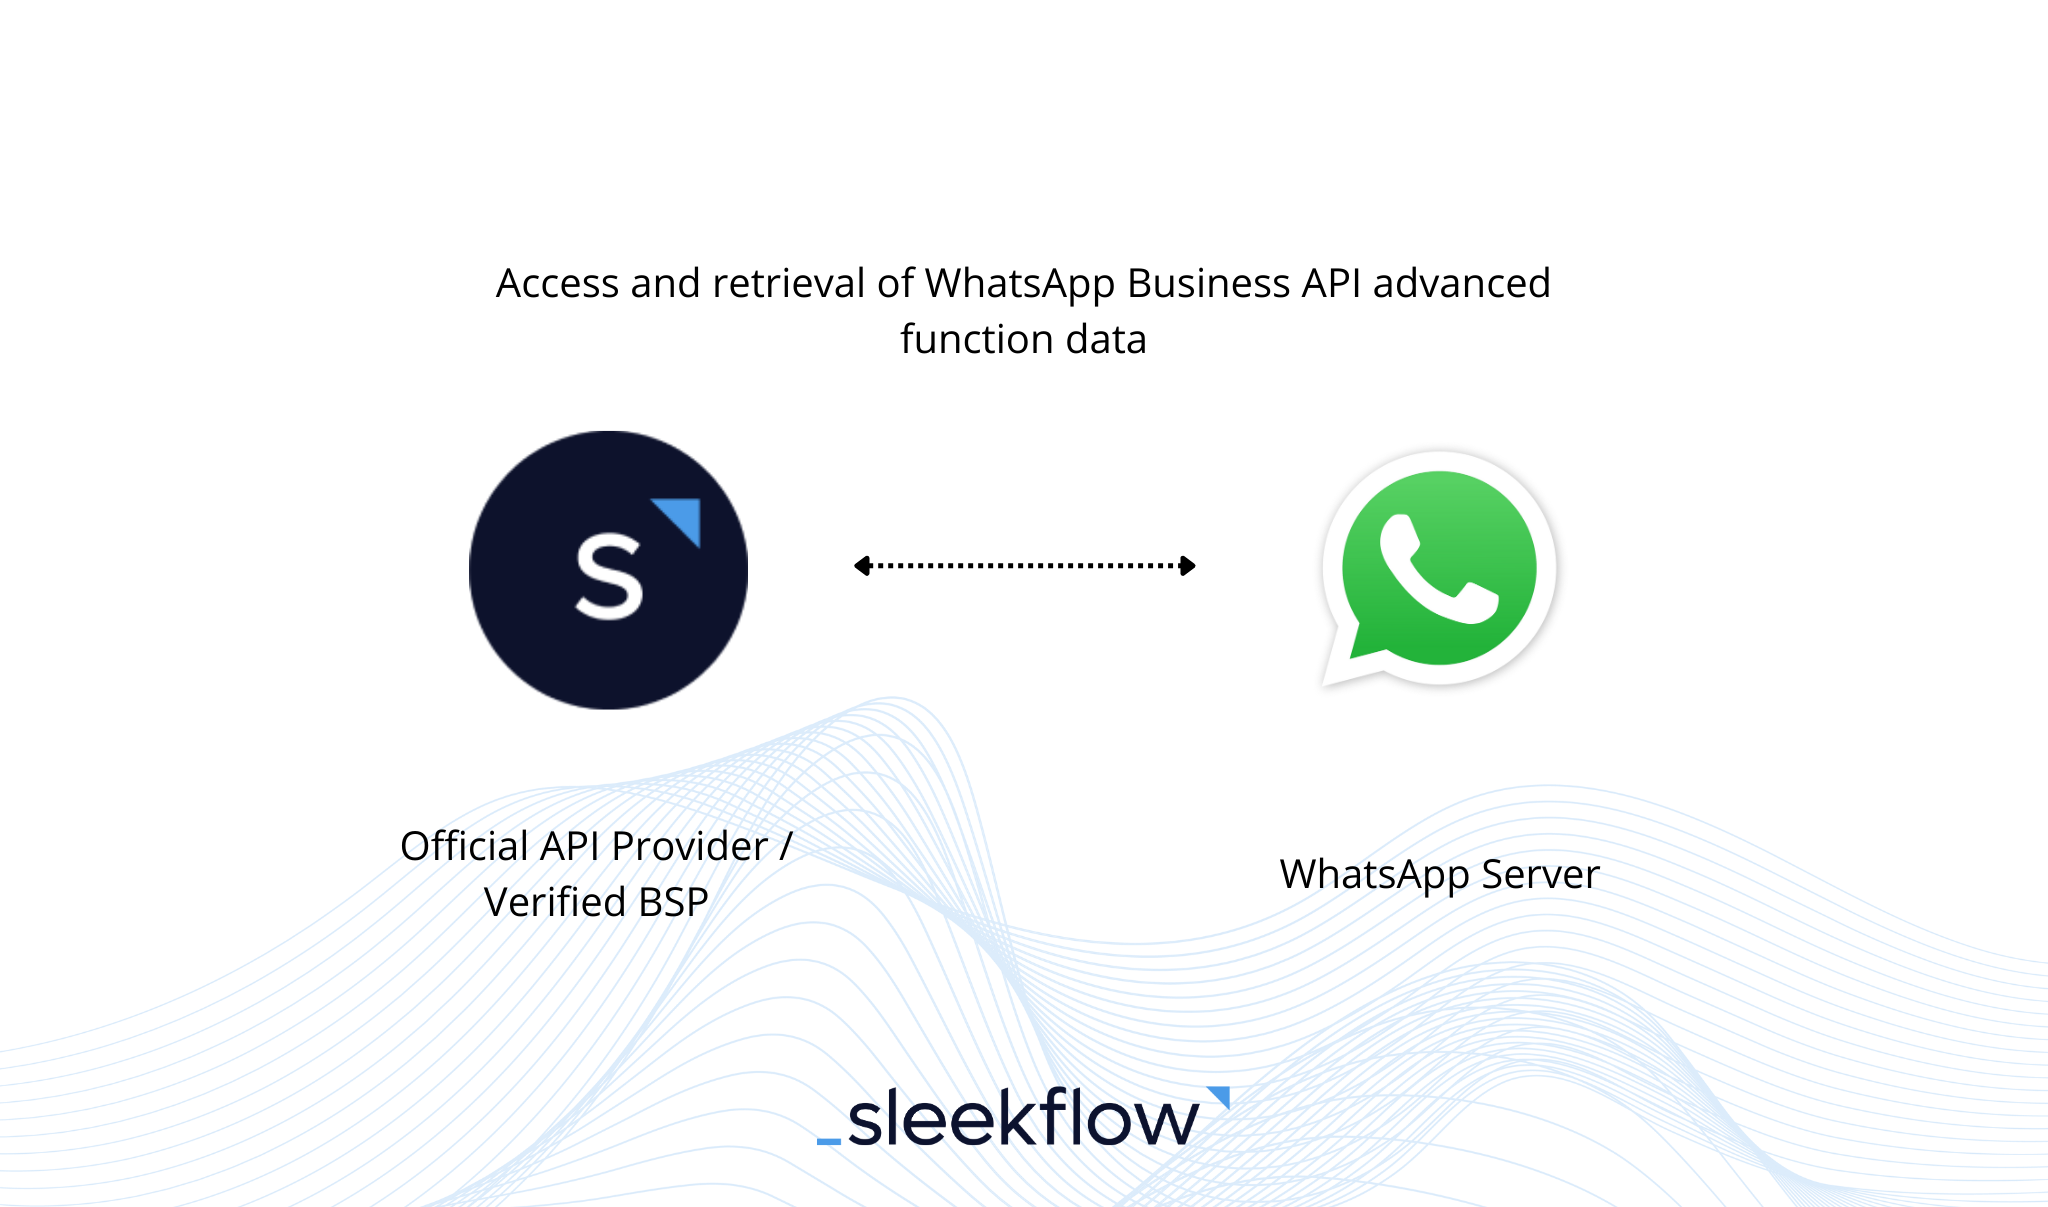 SleekFlow, Fornitore di Soluzioni per WhatsApp Business (BSP) ufficiale